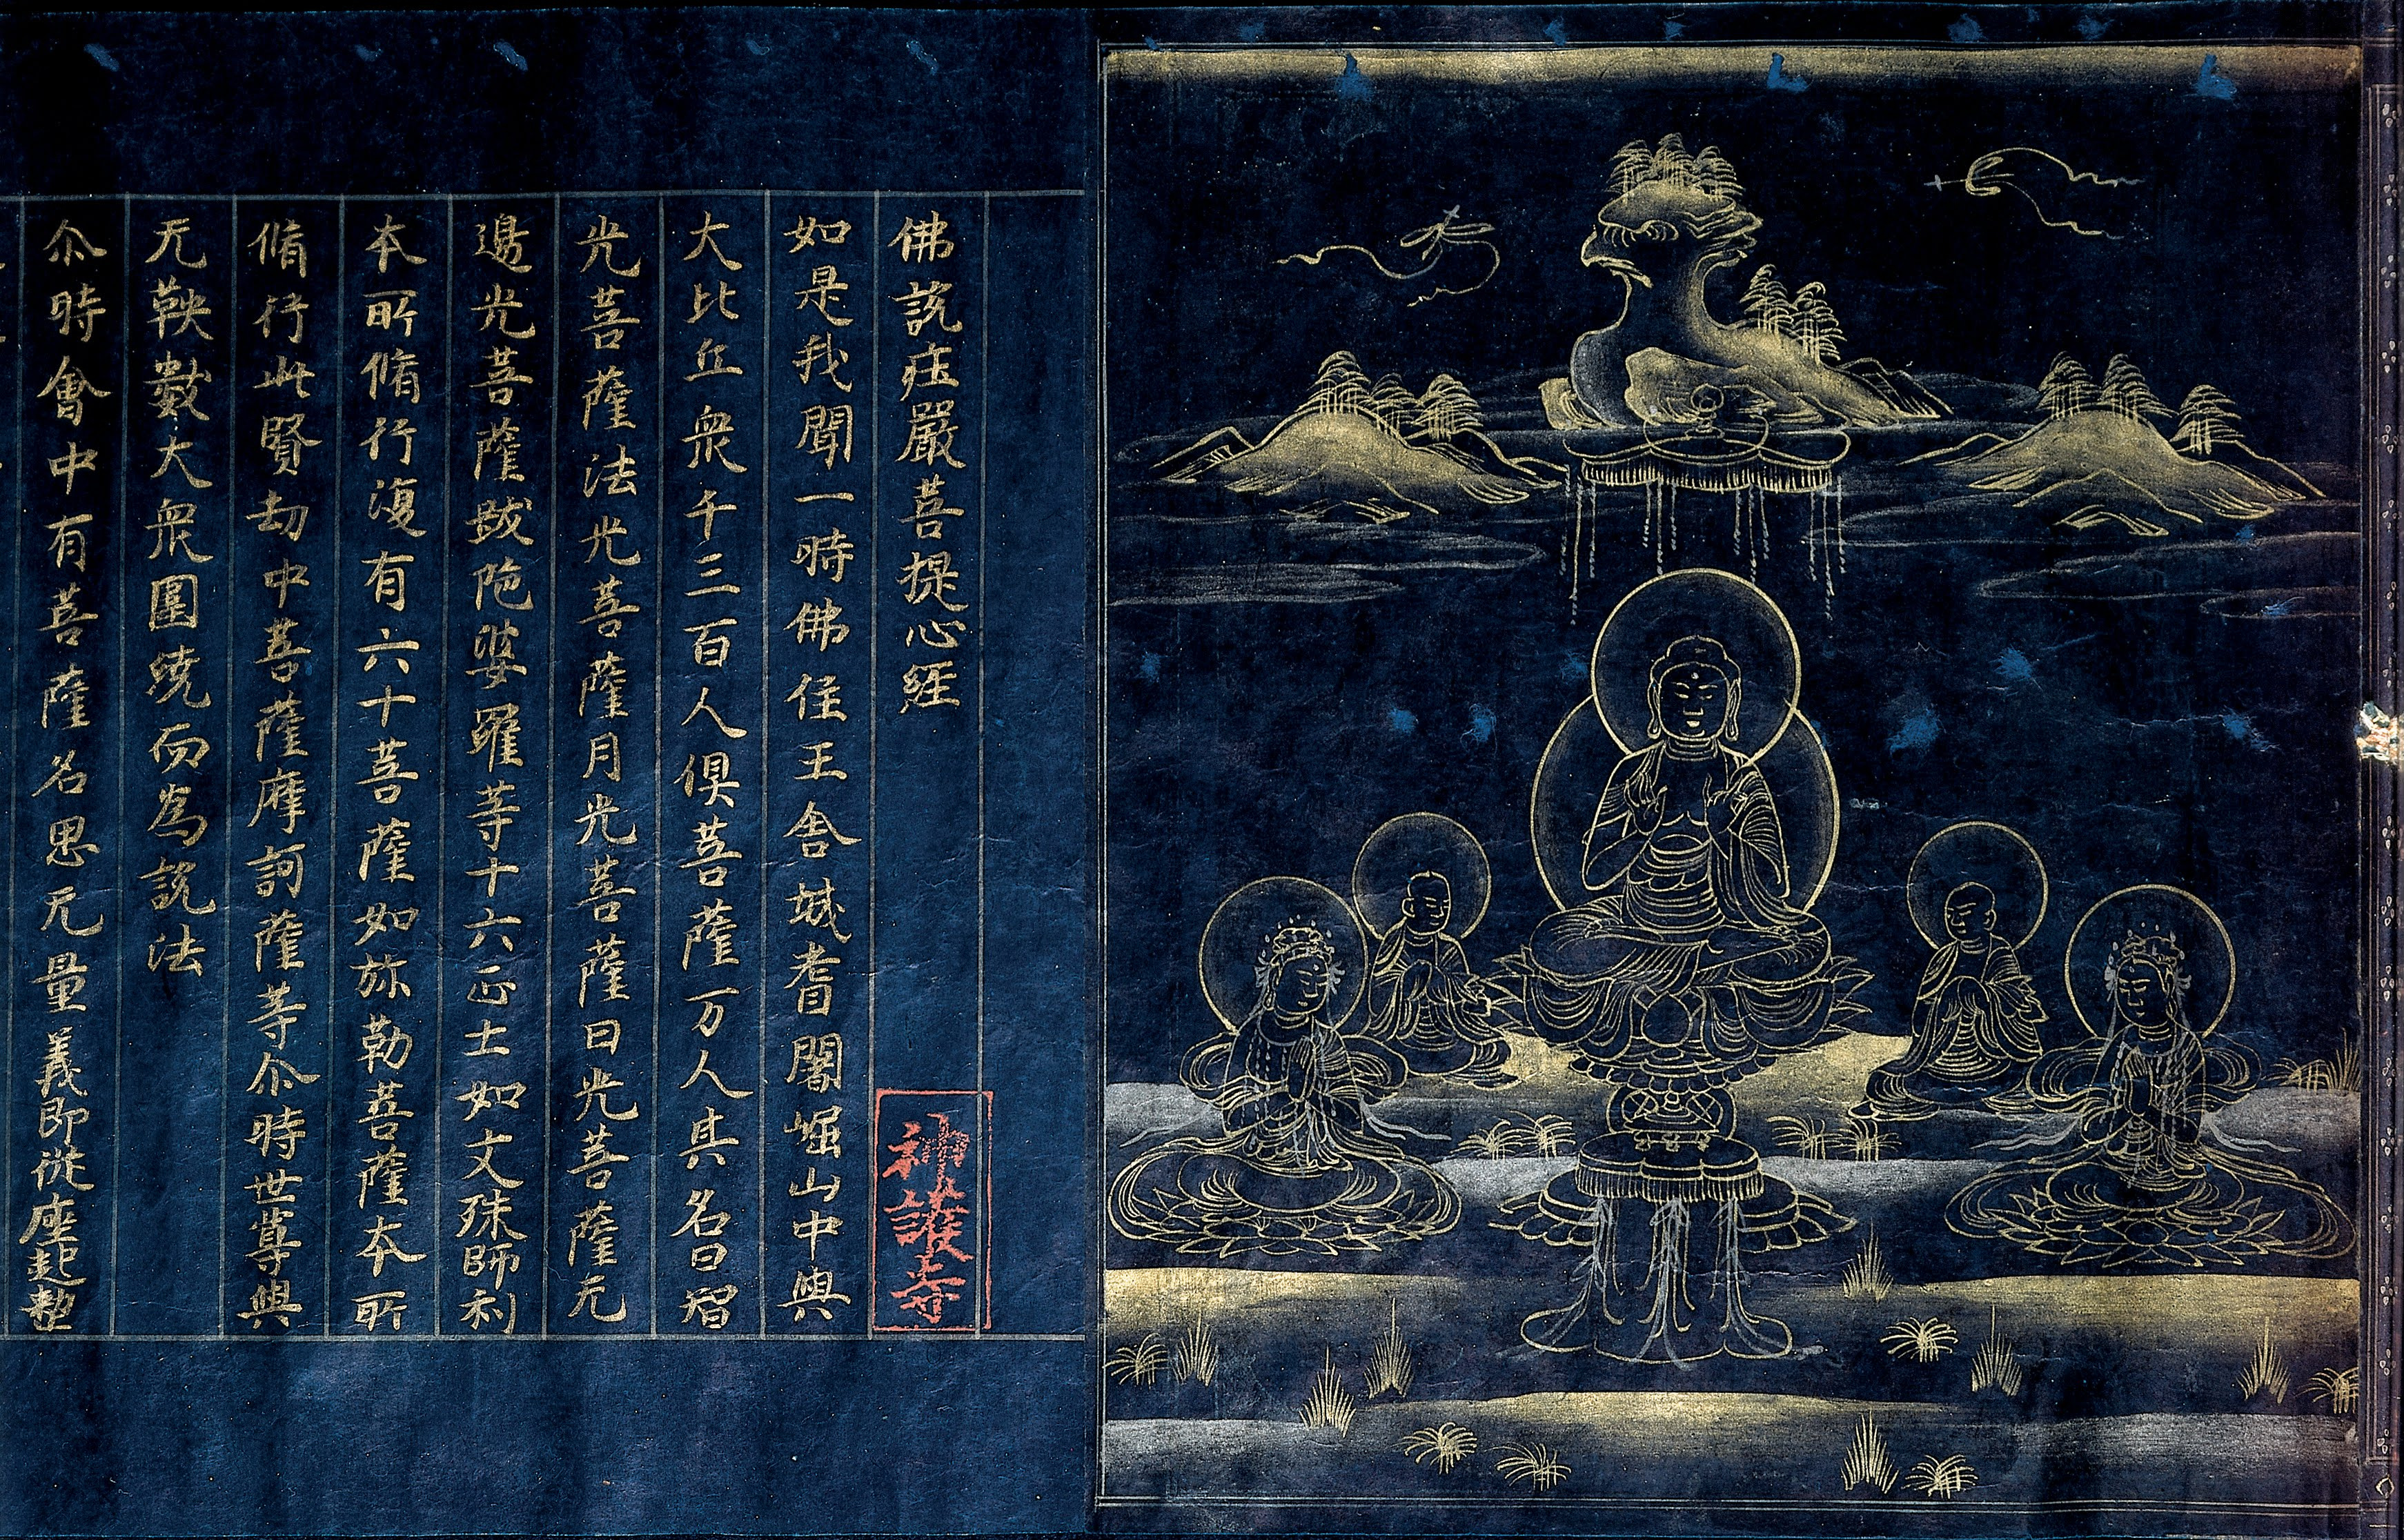 A Buddhist sutra written in Chinese in gold ink on dark indigo paper